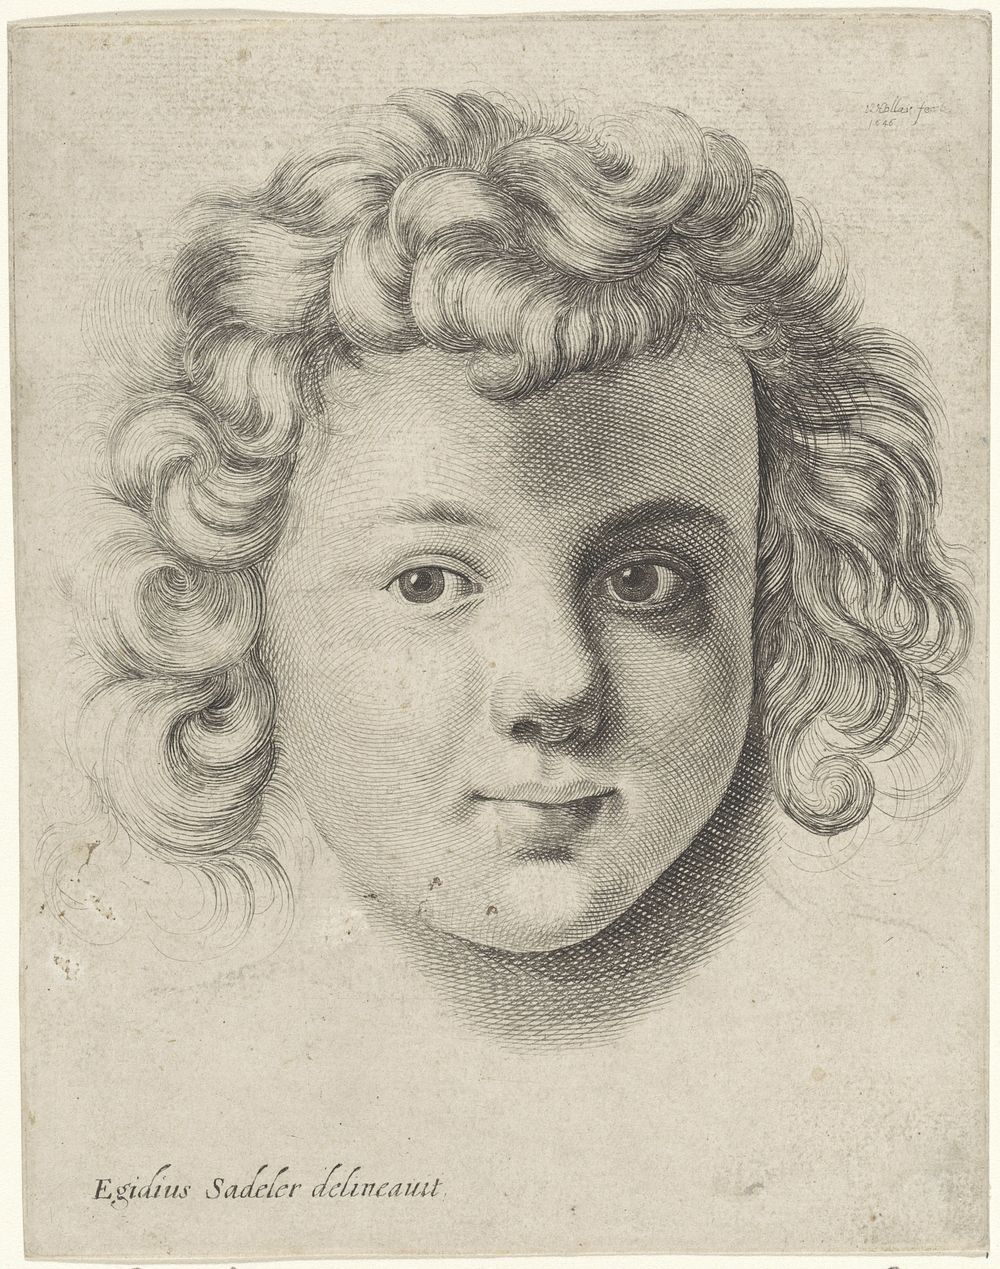 Hoofd van een kind (1646) by Wenceslaus Hollar and Aegidius Sadeler II